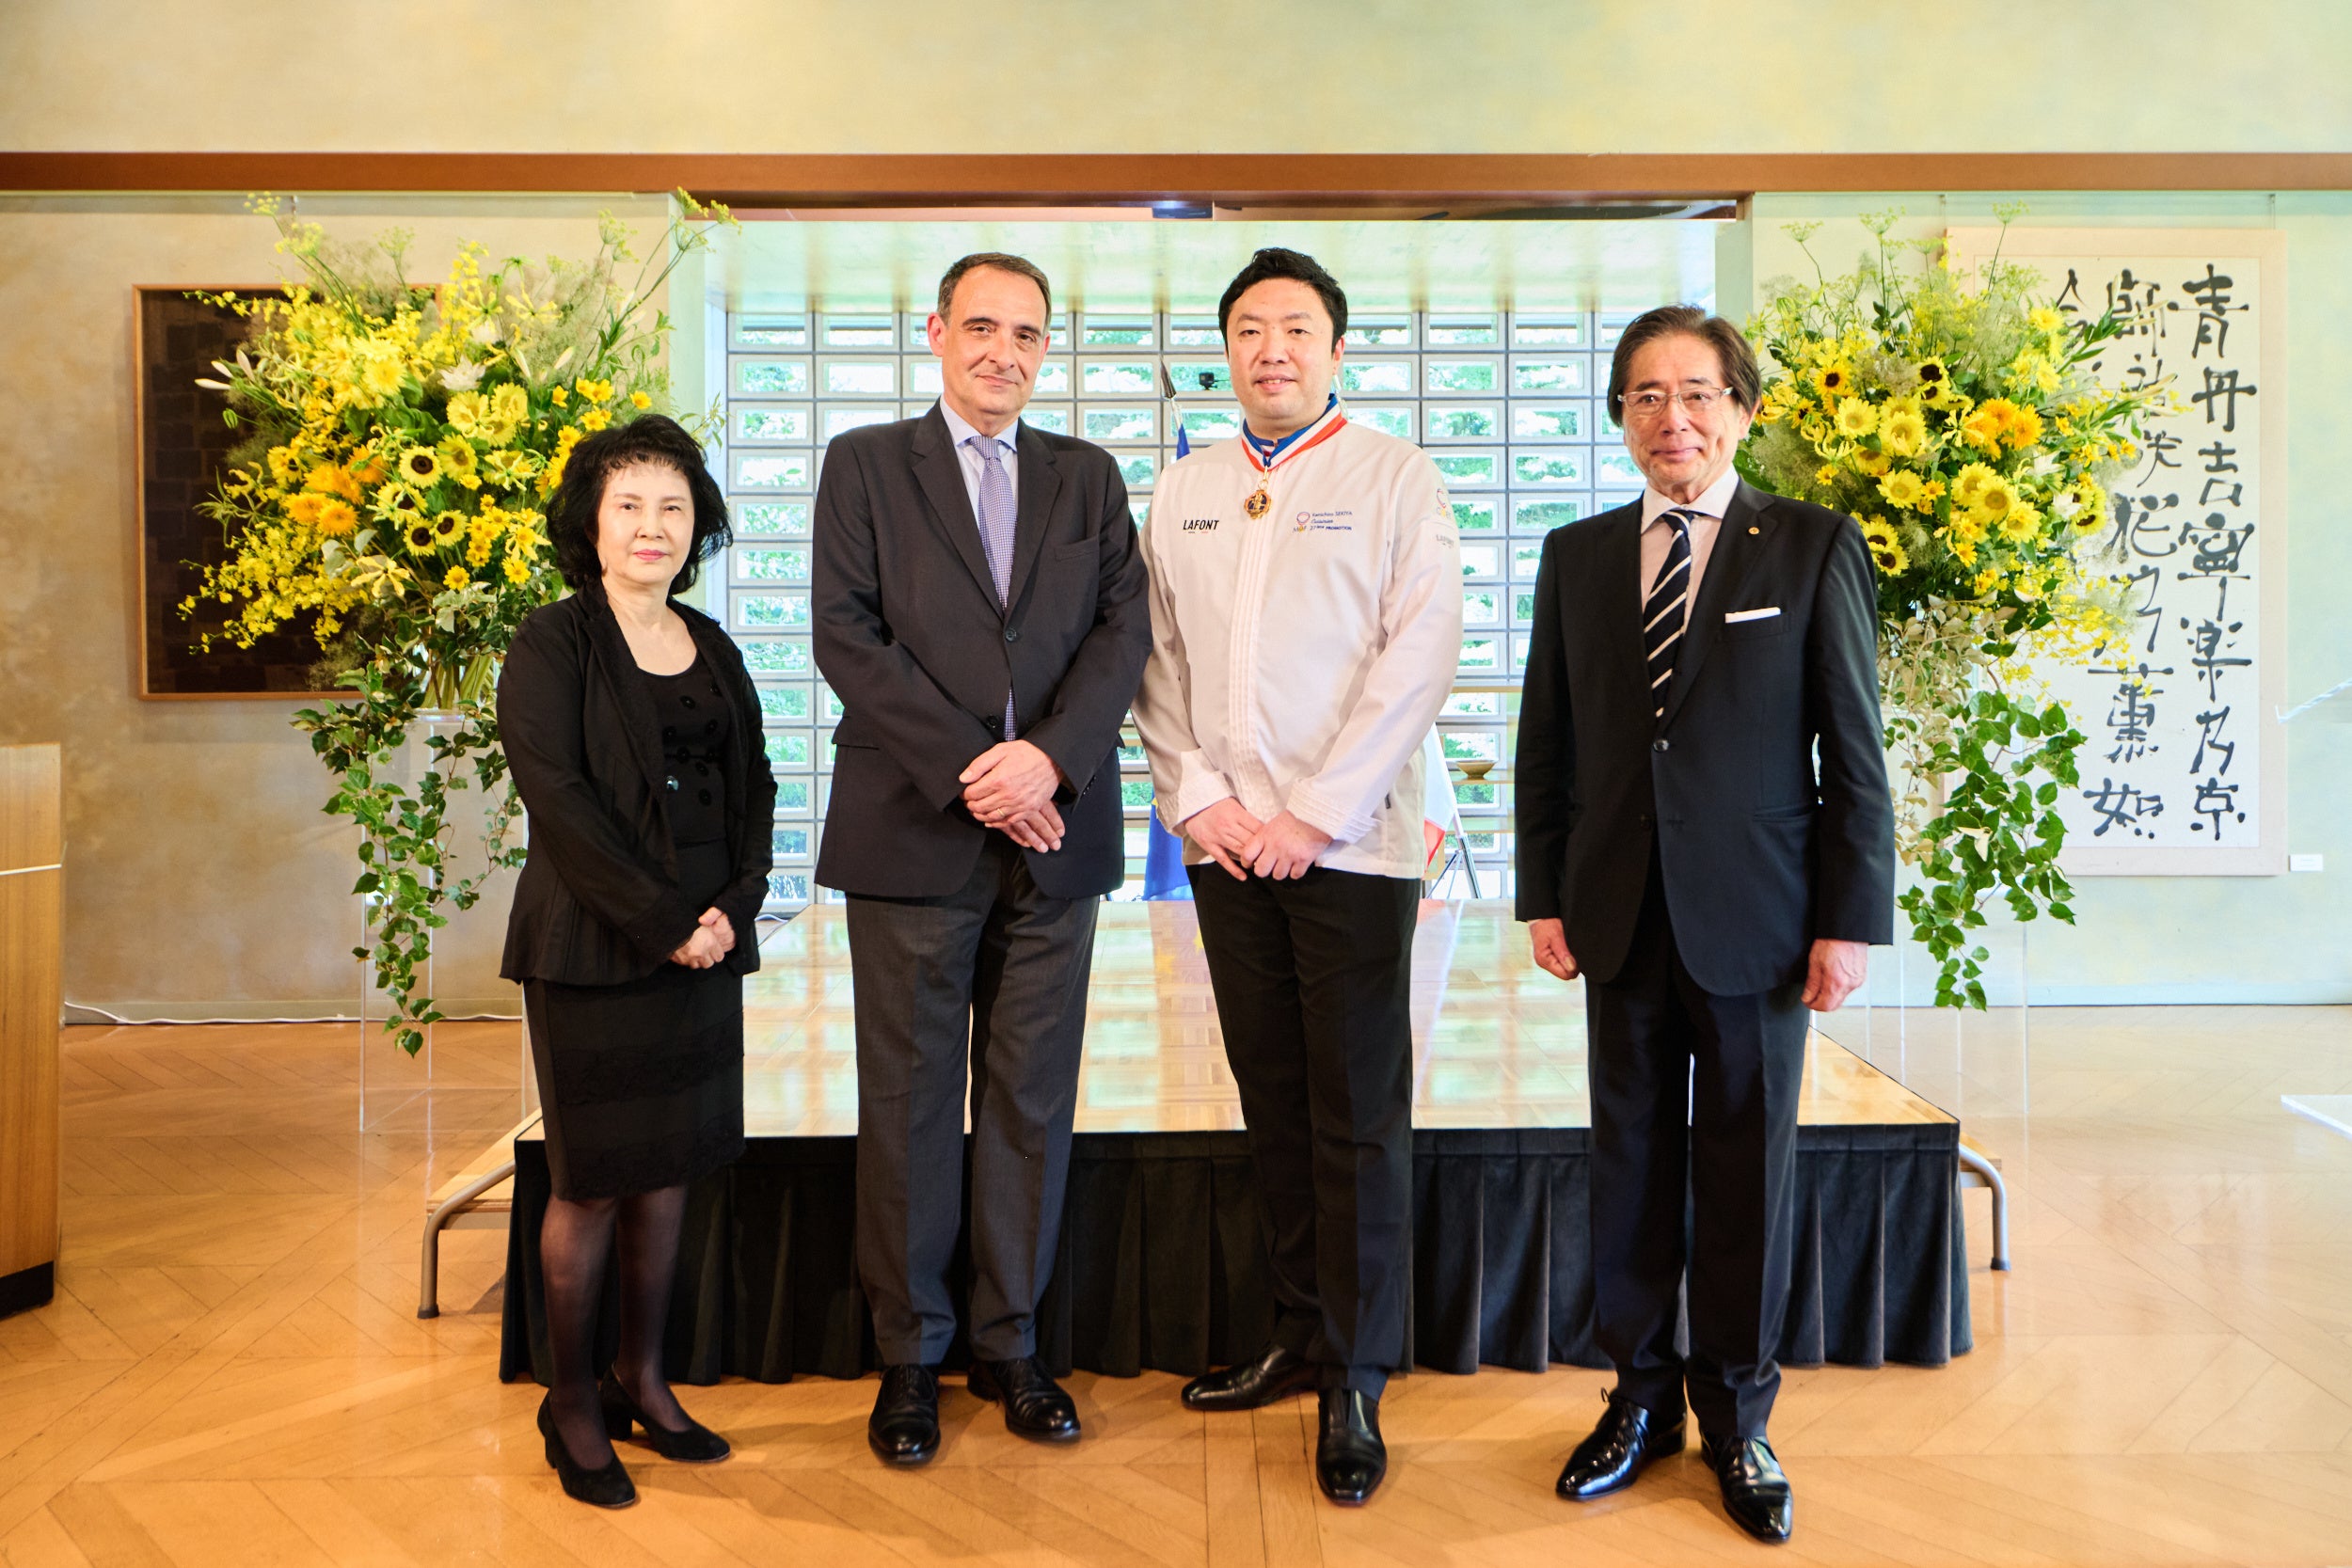 左から㈱フォーシーズ 代表取締役社長 淺野 幸子、フィリップ・セトン駐日フランス大使、 関谷 健一朗、 ㈱フォーシーズ 代表取締役会長兼CEO 淺野 秀則